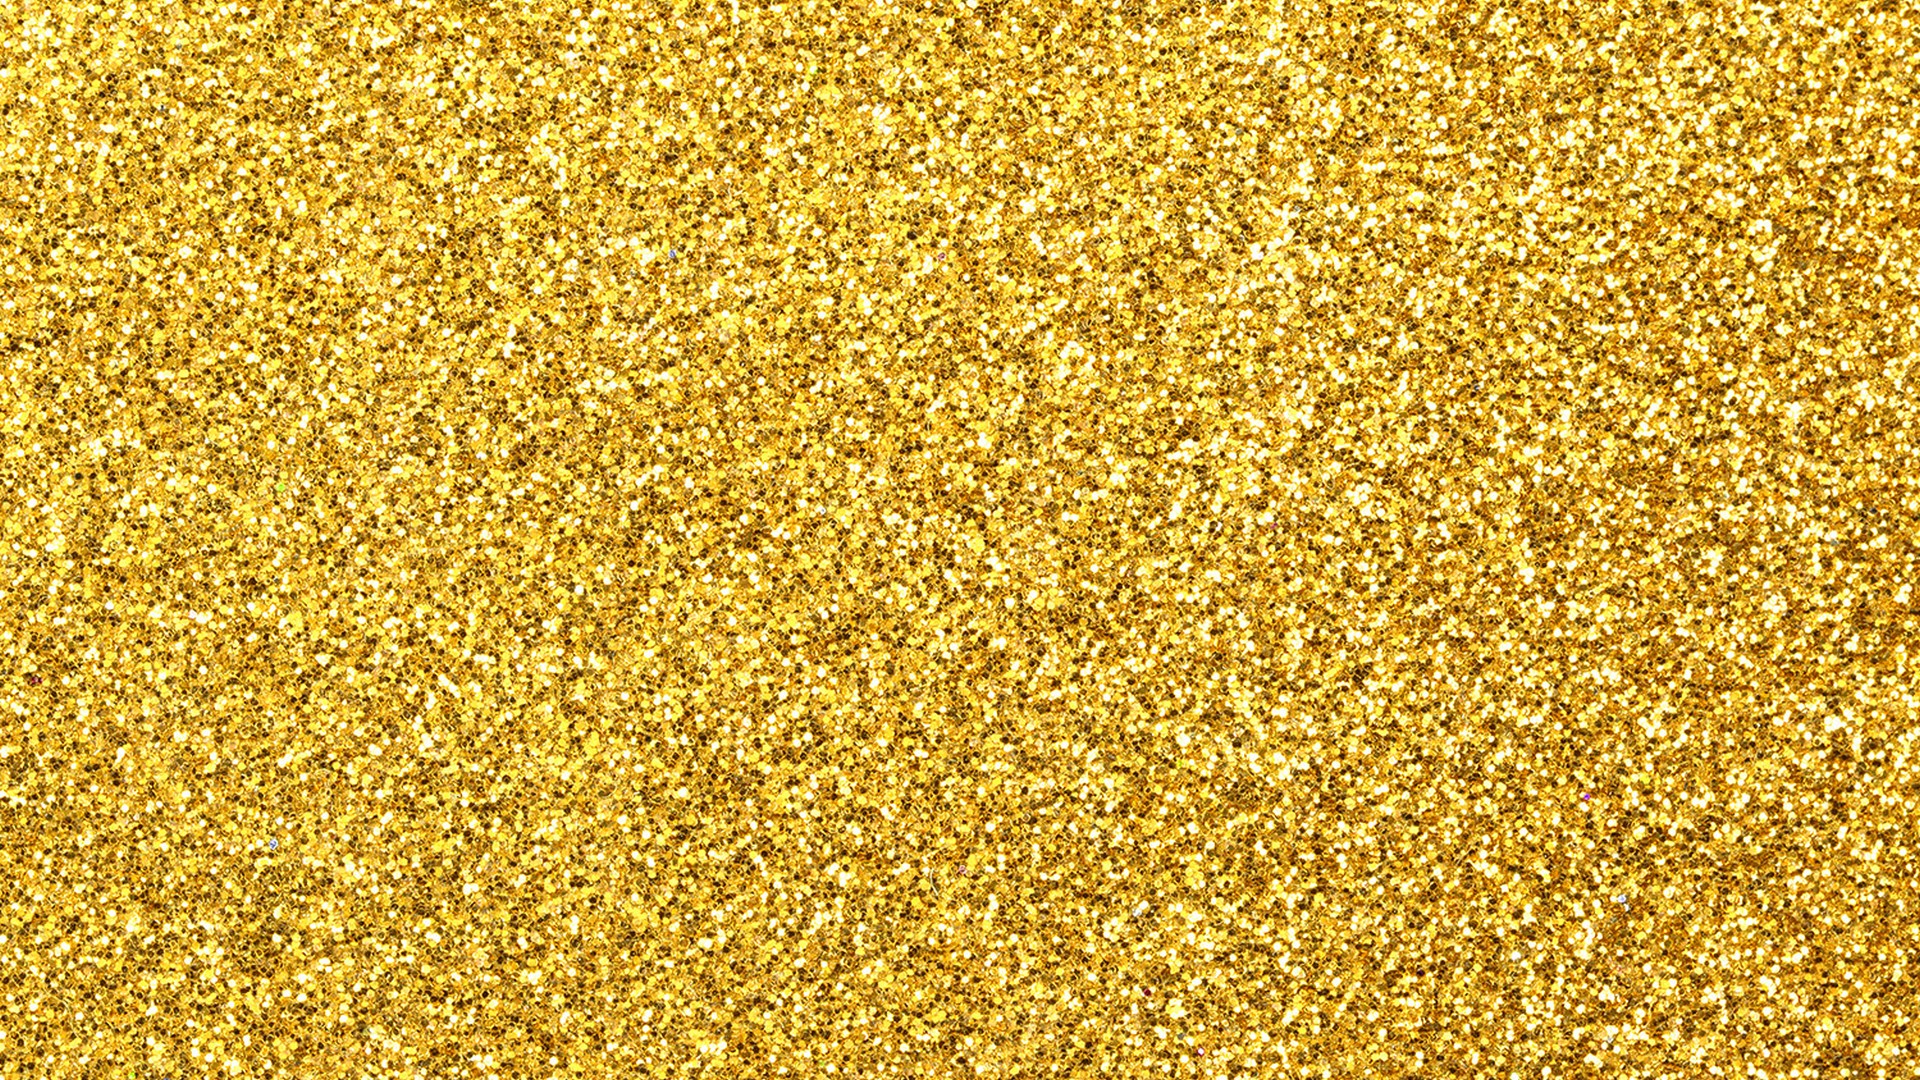 HD Wallpaper Gold Glitter 1920x1080